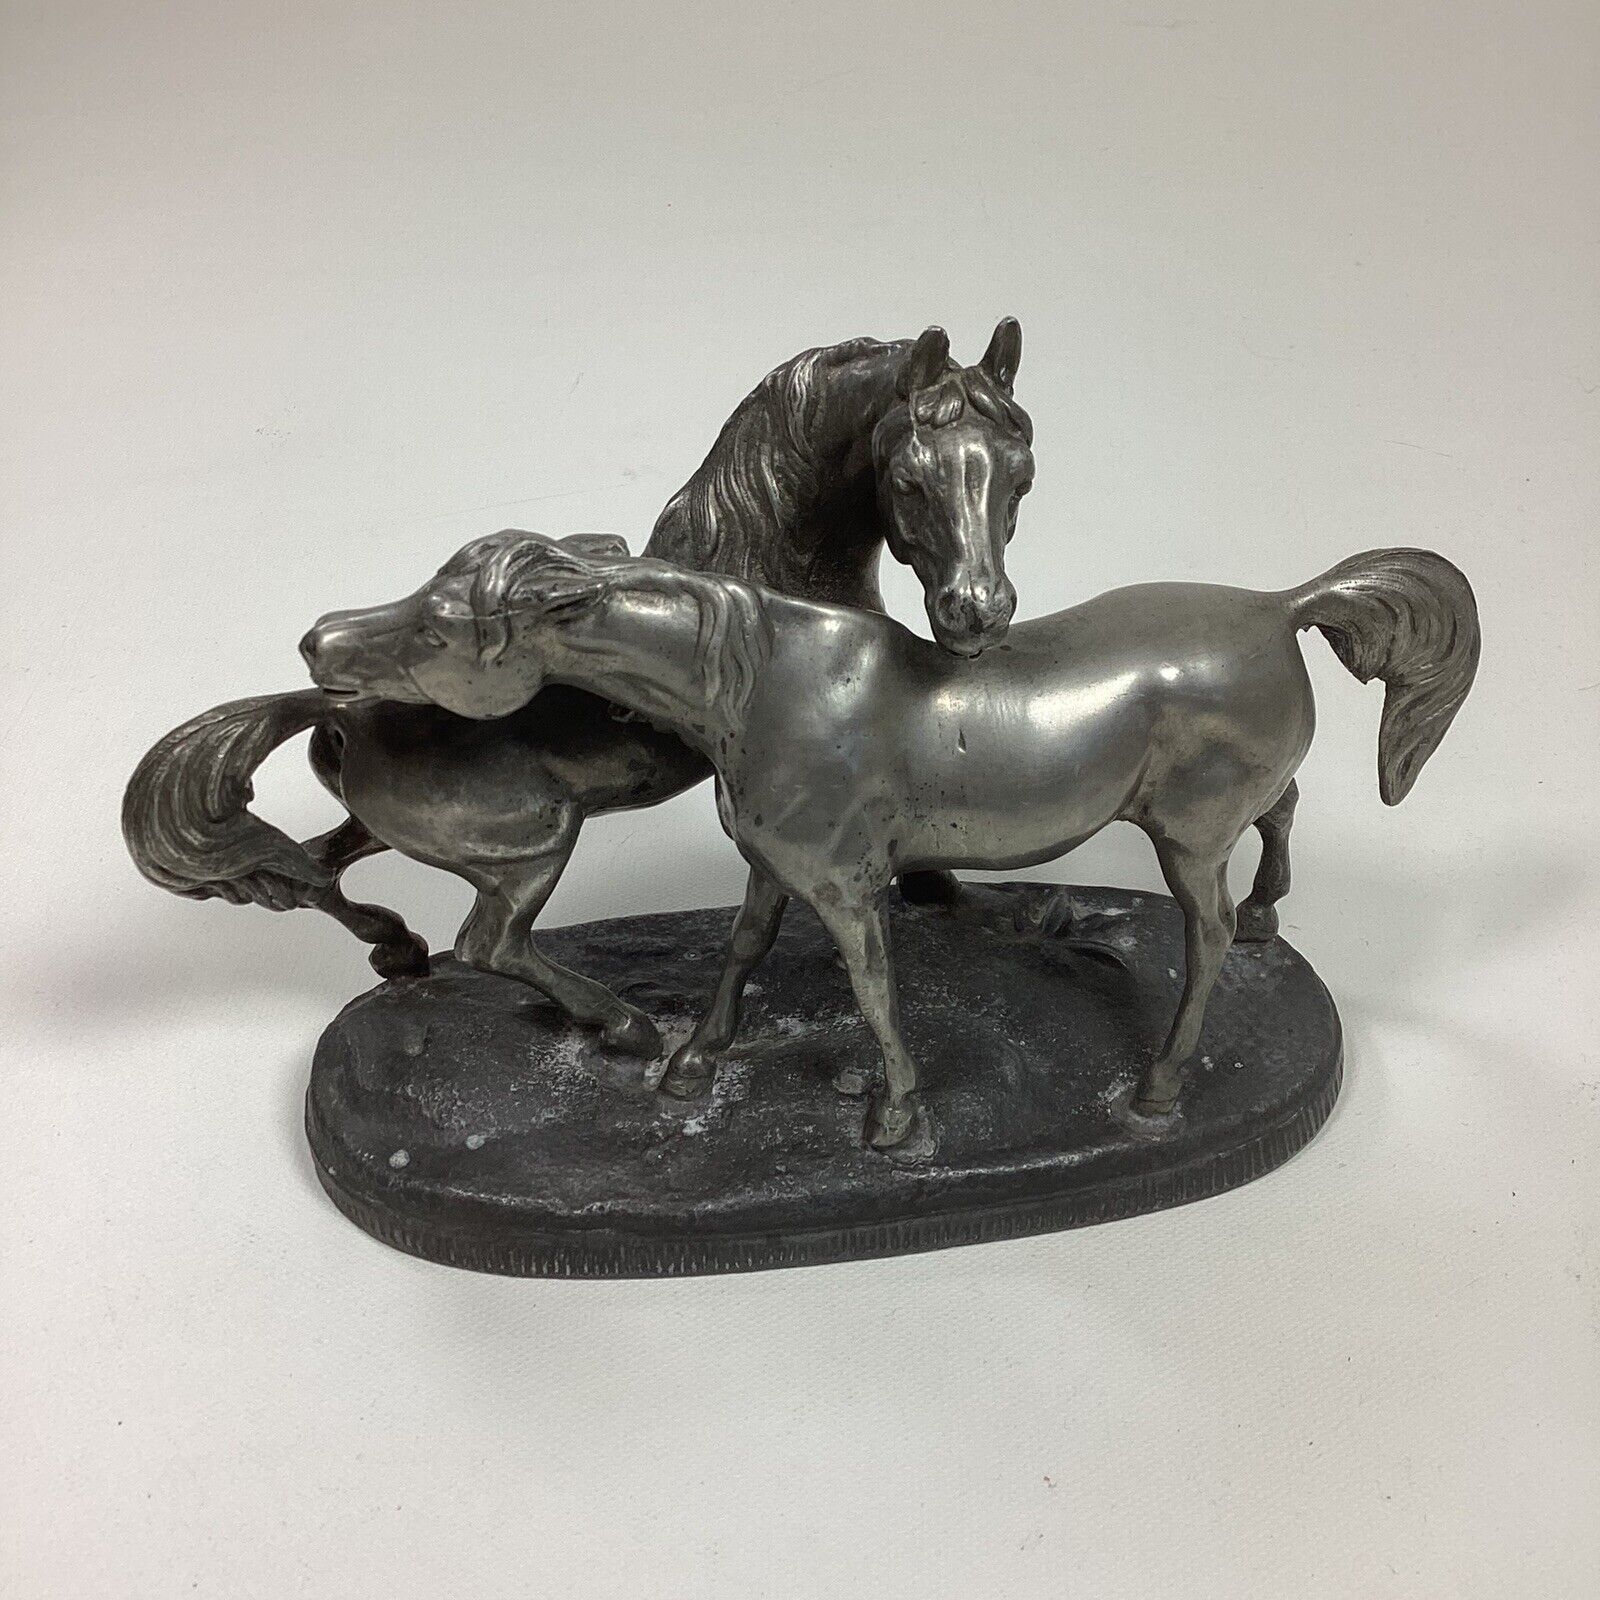 Vintage Antique Cast Metal Two Horse Figure Statue Art No Markings